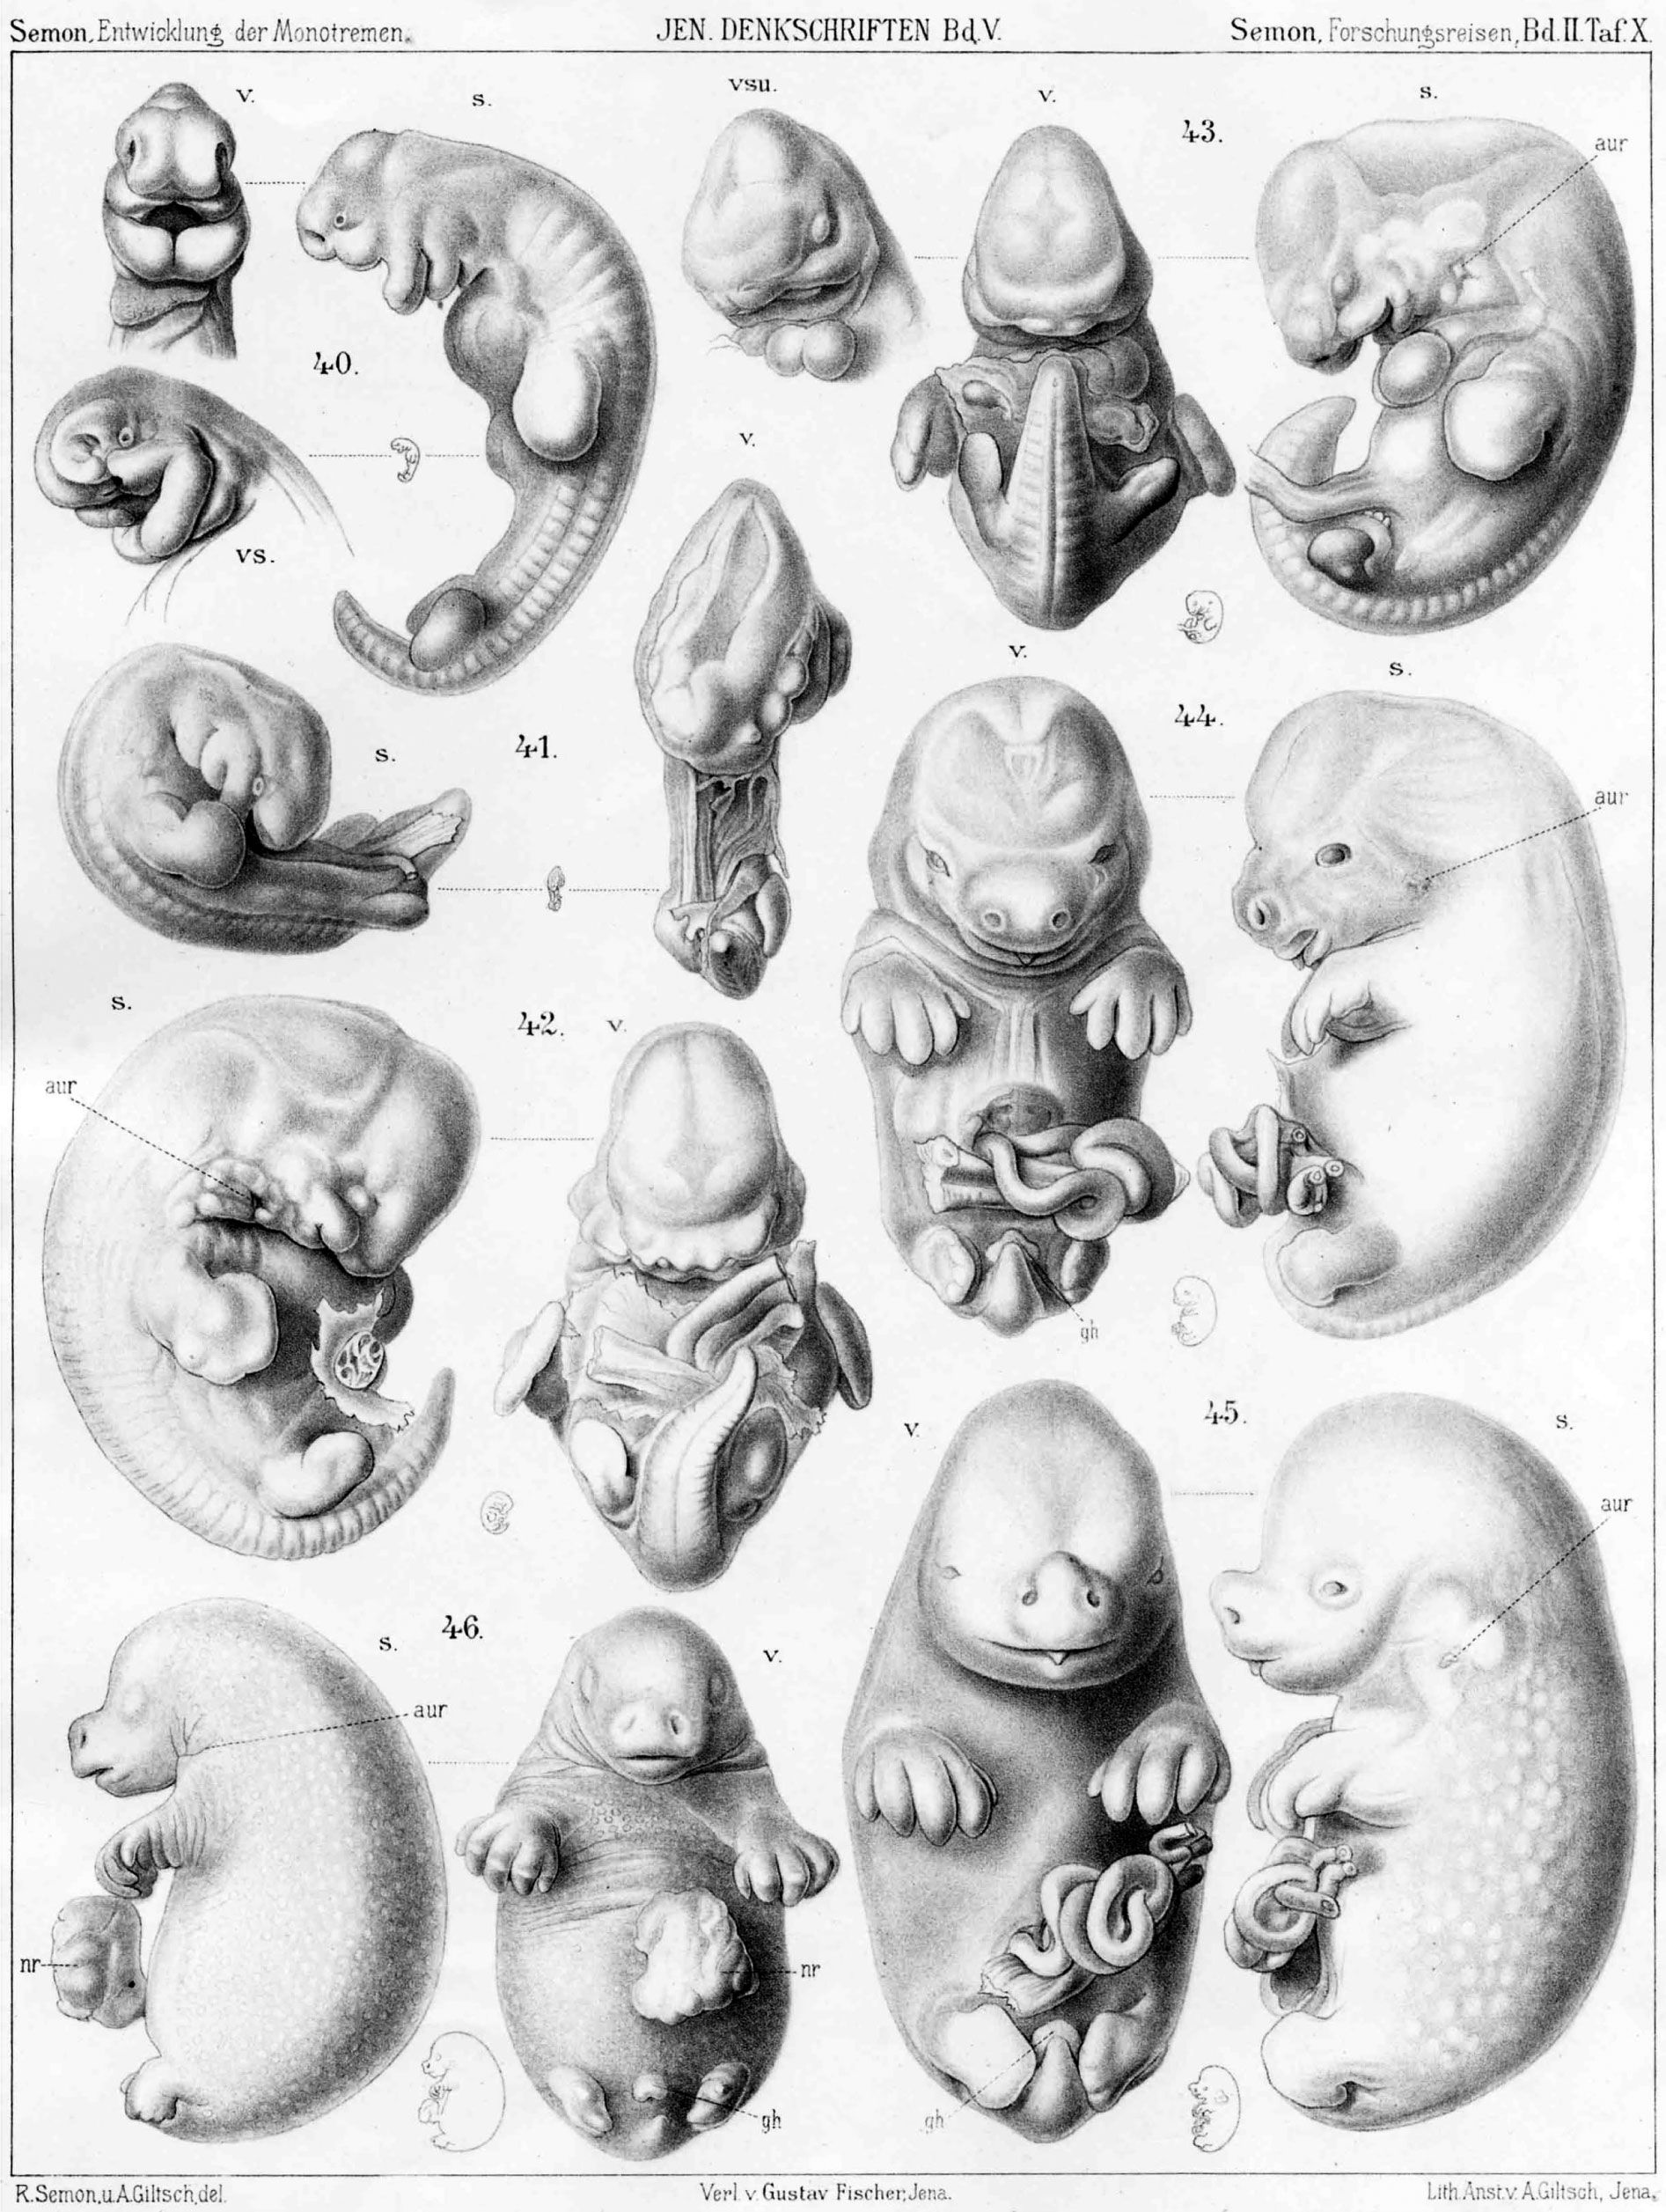 Дробление (эмбриология) — википедия. что такое дробление (эмбриология)